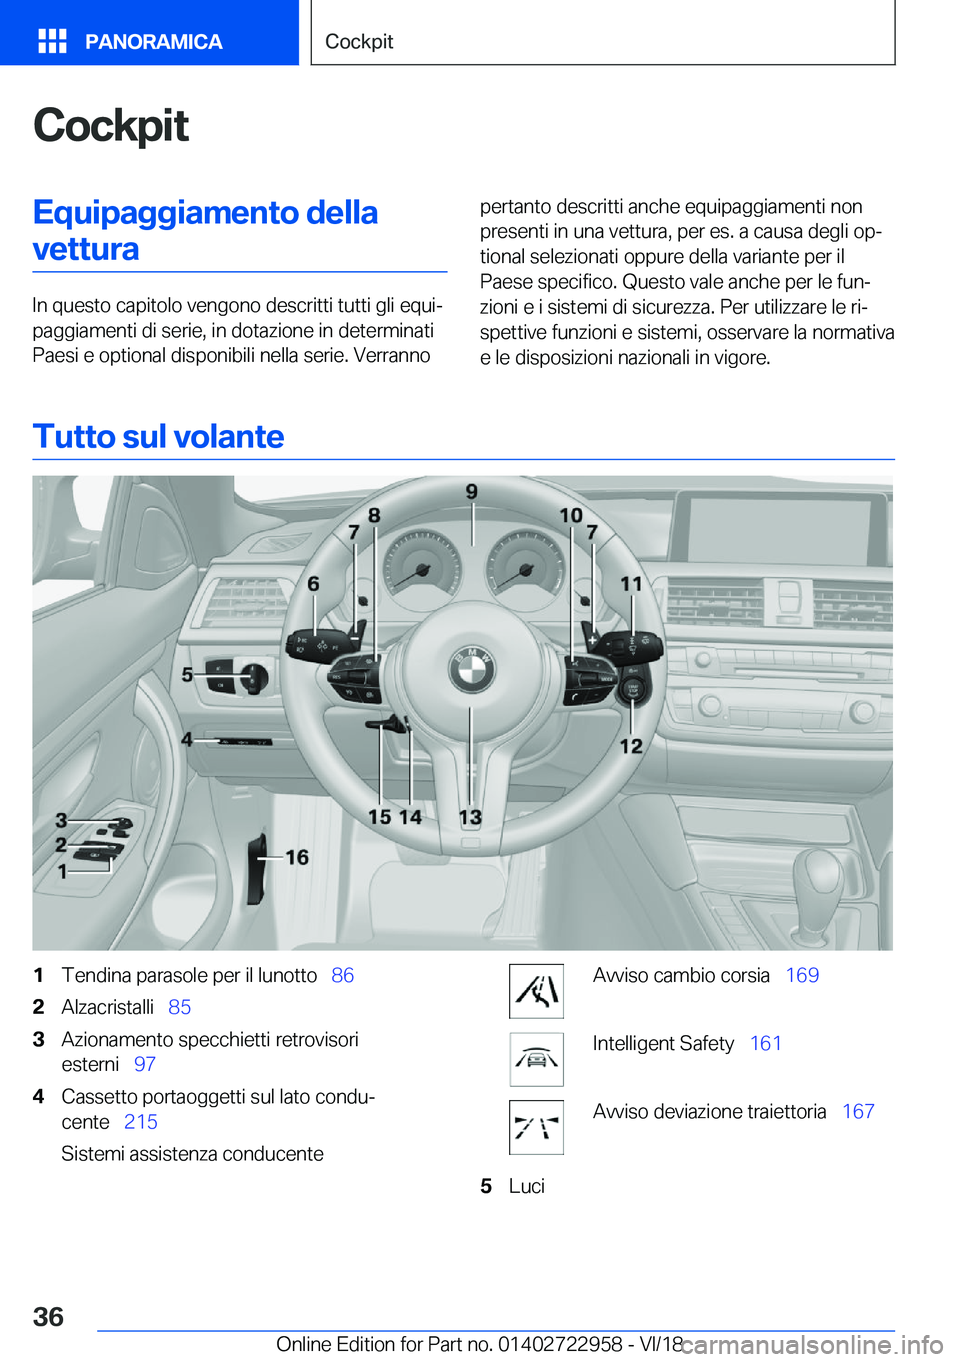 BMW M4 2019  Libretti Di Uso E manutenzione (in Italian) �C�o�c�k�p�i�t�E�q�u�i�p�a�g�g�i�a�m�e�n�t�o��d�e�l�l�a�v�e�t�t�u�r�a
�I�n��q�u�e�s�t�o��c�a�p�i�t�o�l�o��v�e�n�g�o�n�o��d�e�s�c�r�i�t�t�i��t�u�t�t�i��g�l�i��e�q�u�iª
�p�a�g�g�i�a�m�e�n�t�i�